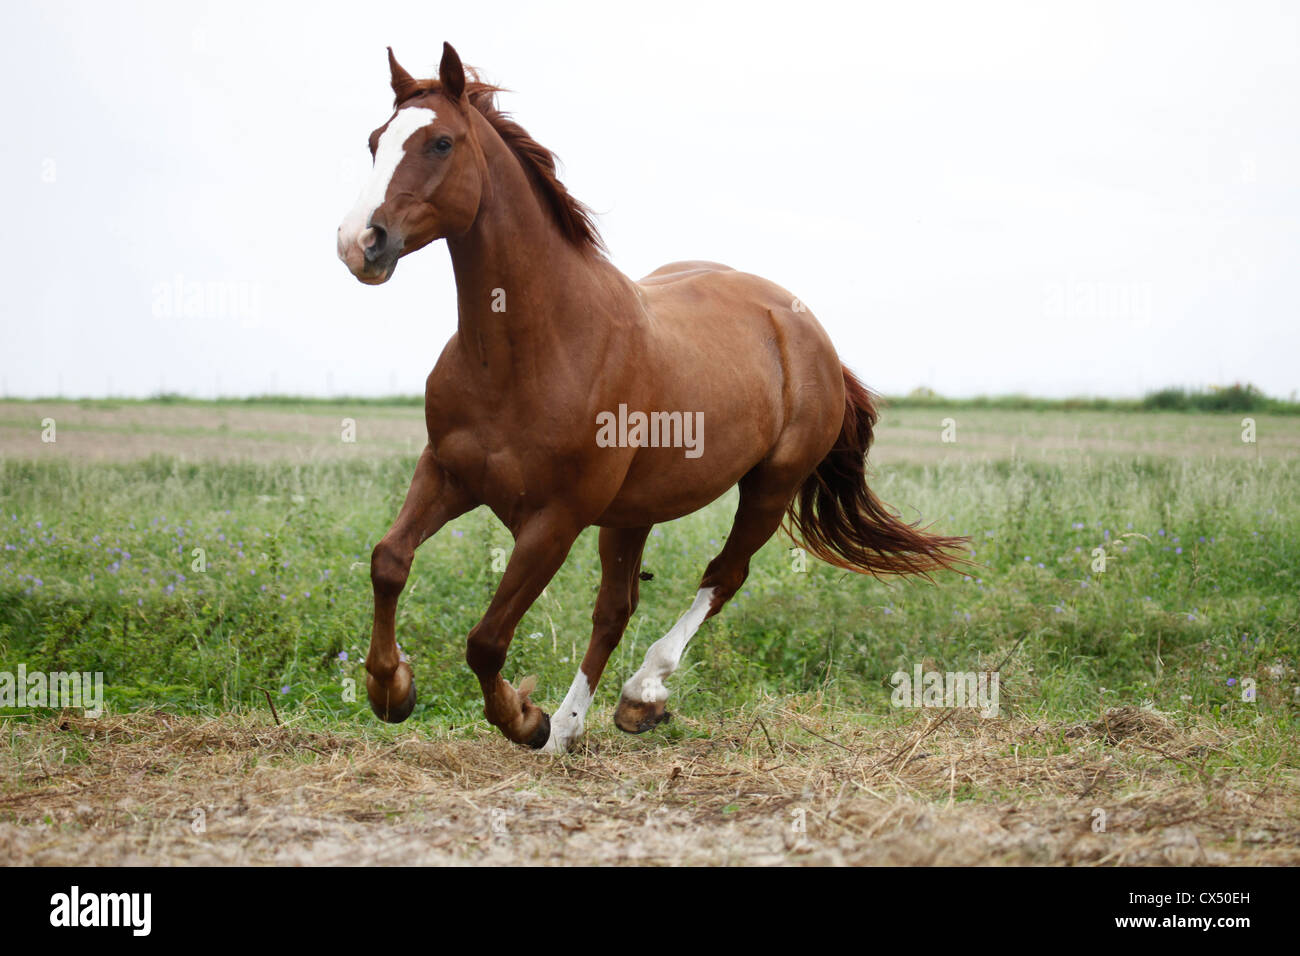 running horse Stock Photo